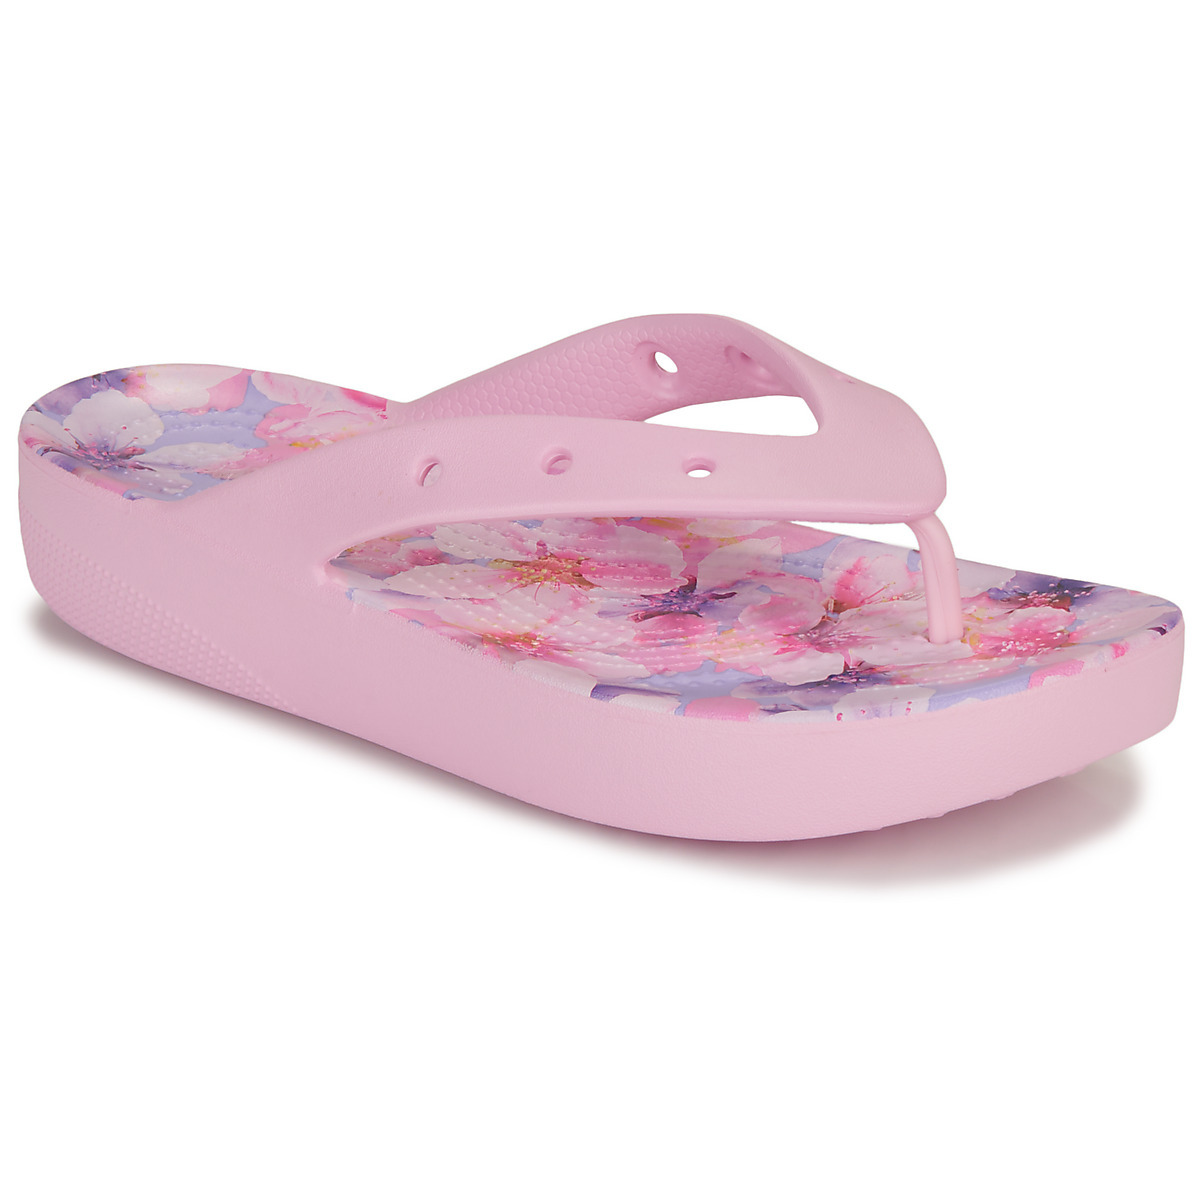 Crocs - Woman Flip Flops in Pink - Spartoo GOOFASH